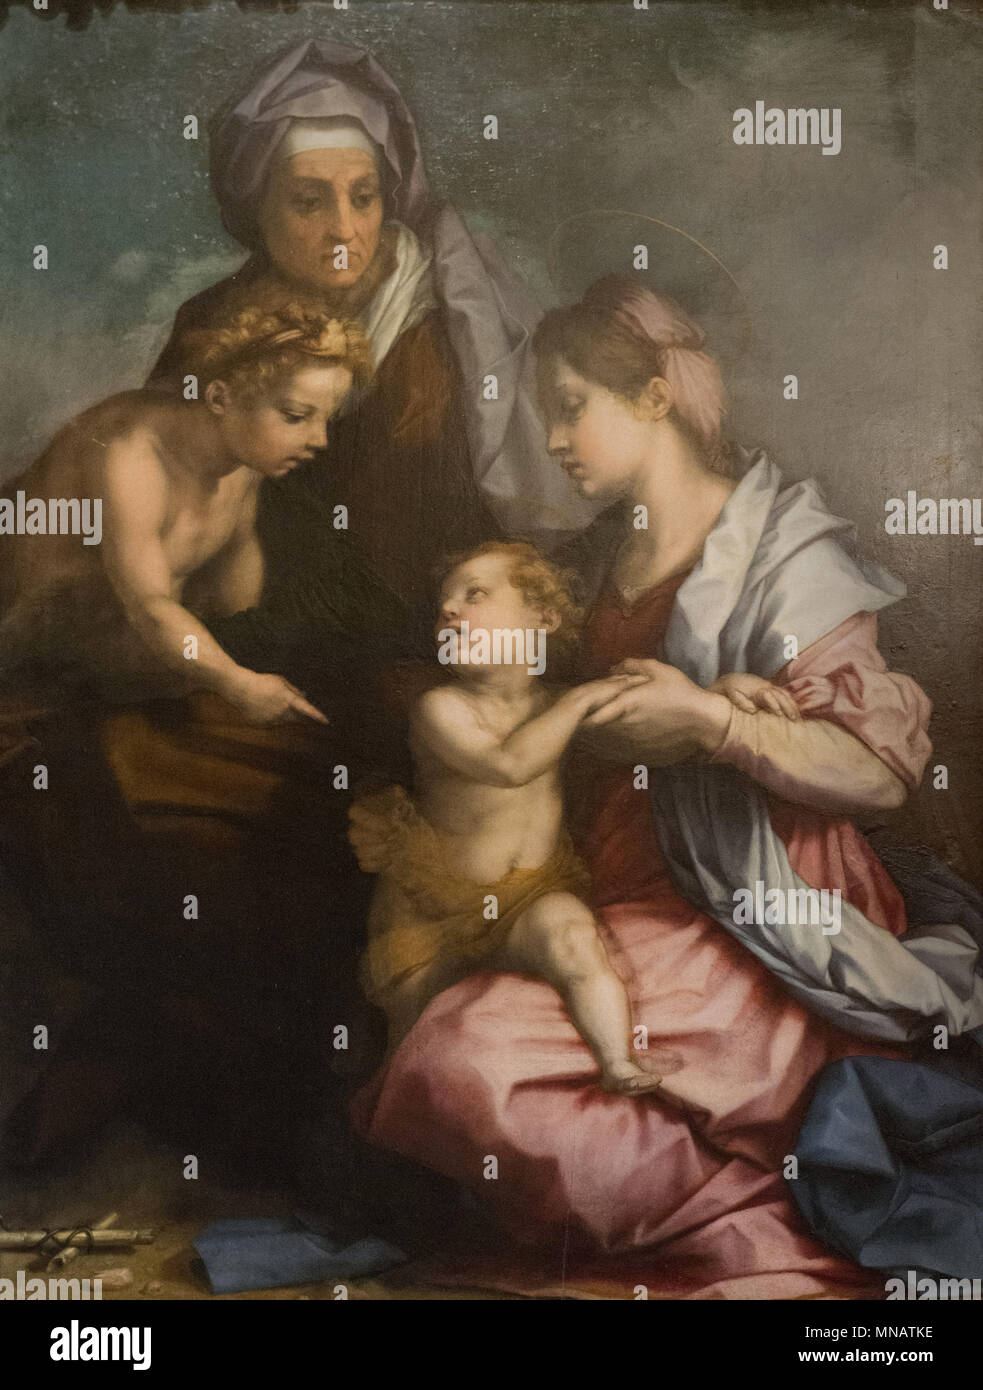 Andrea del Sarto - Madonna mit Kind und Heiligen Elisabeth - und die Infan - Galerie Pitti Palace Florenz Italien Stockfoto